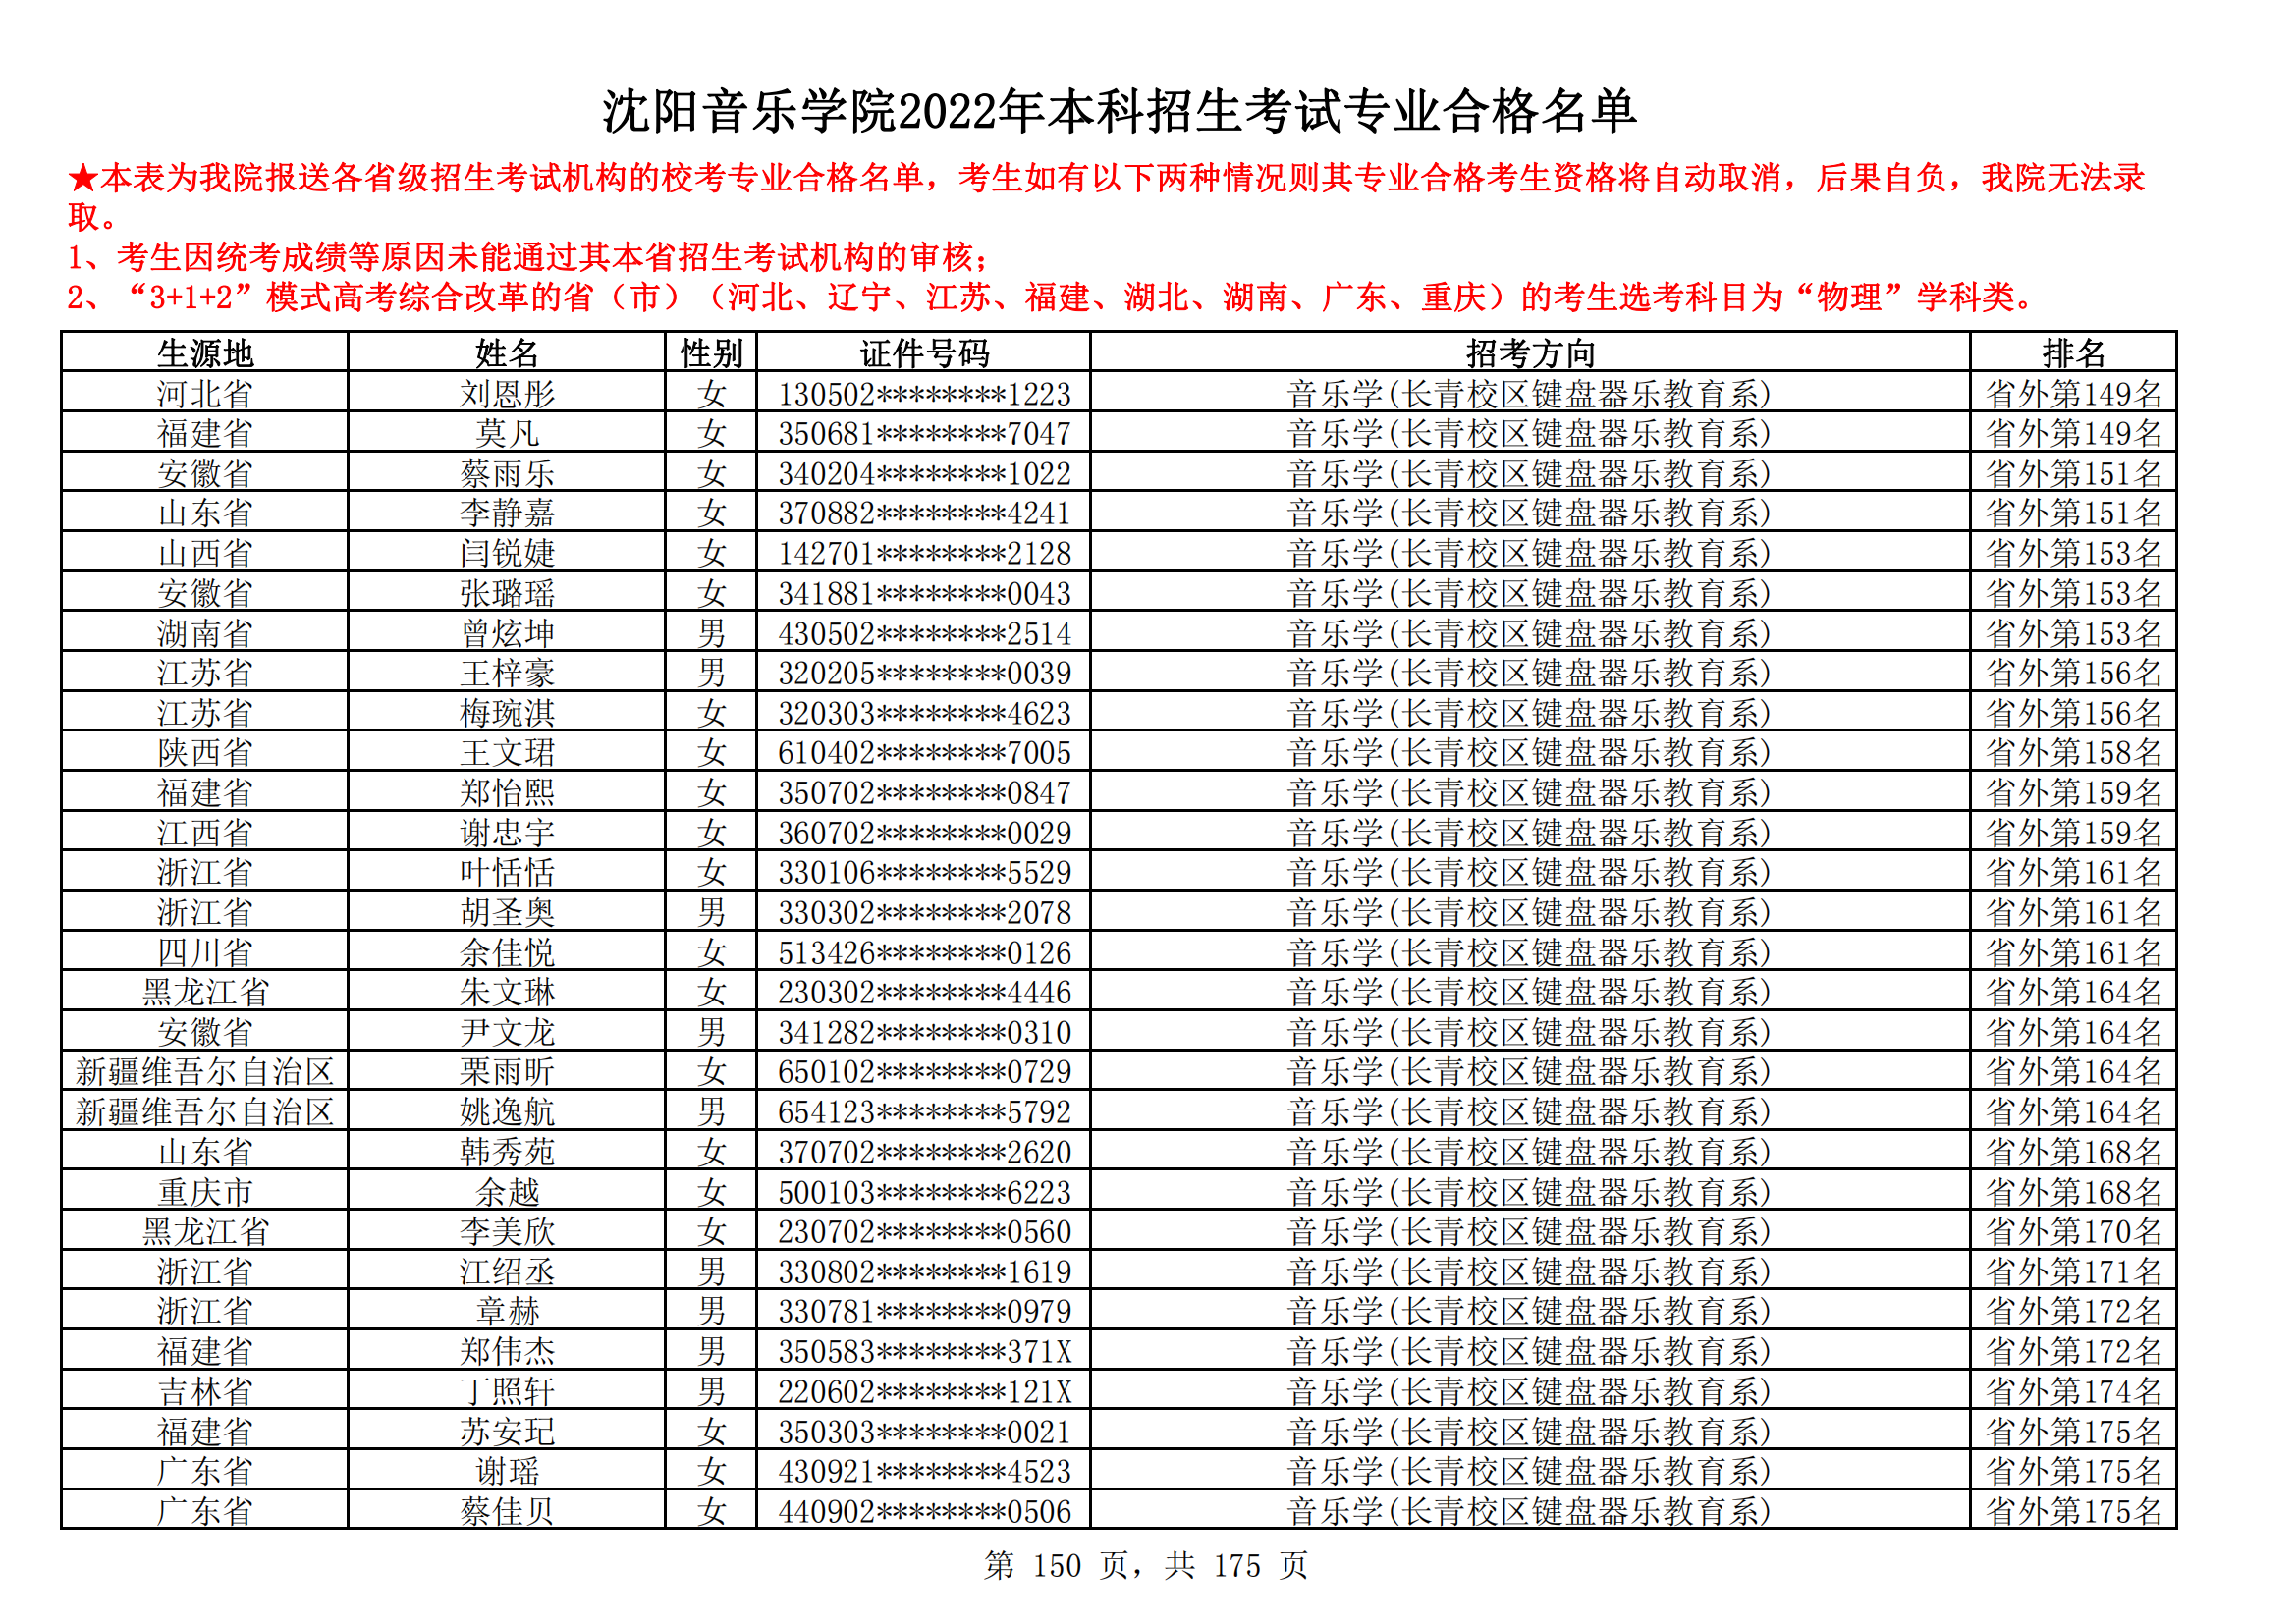 沈阳音乐学院2022年本科招生考试专业合格名单_149.png